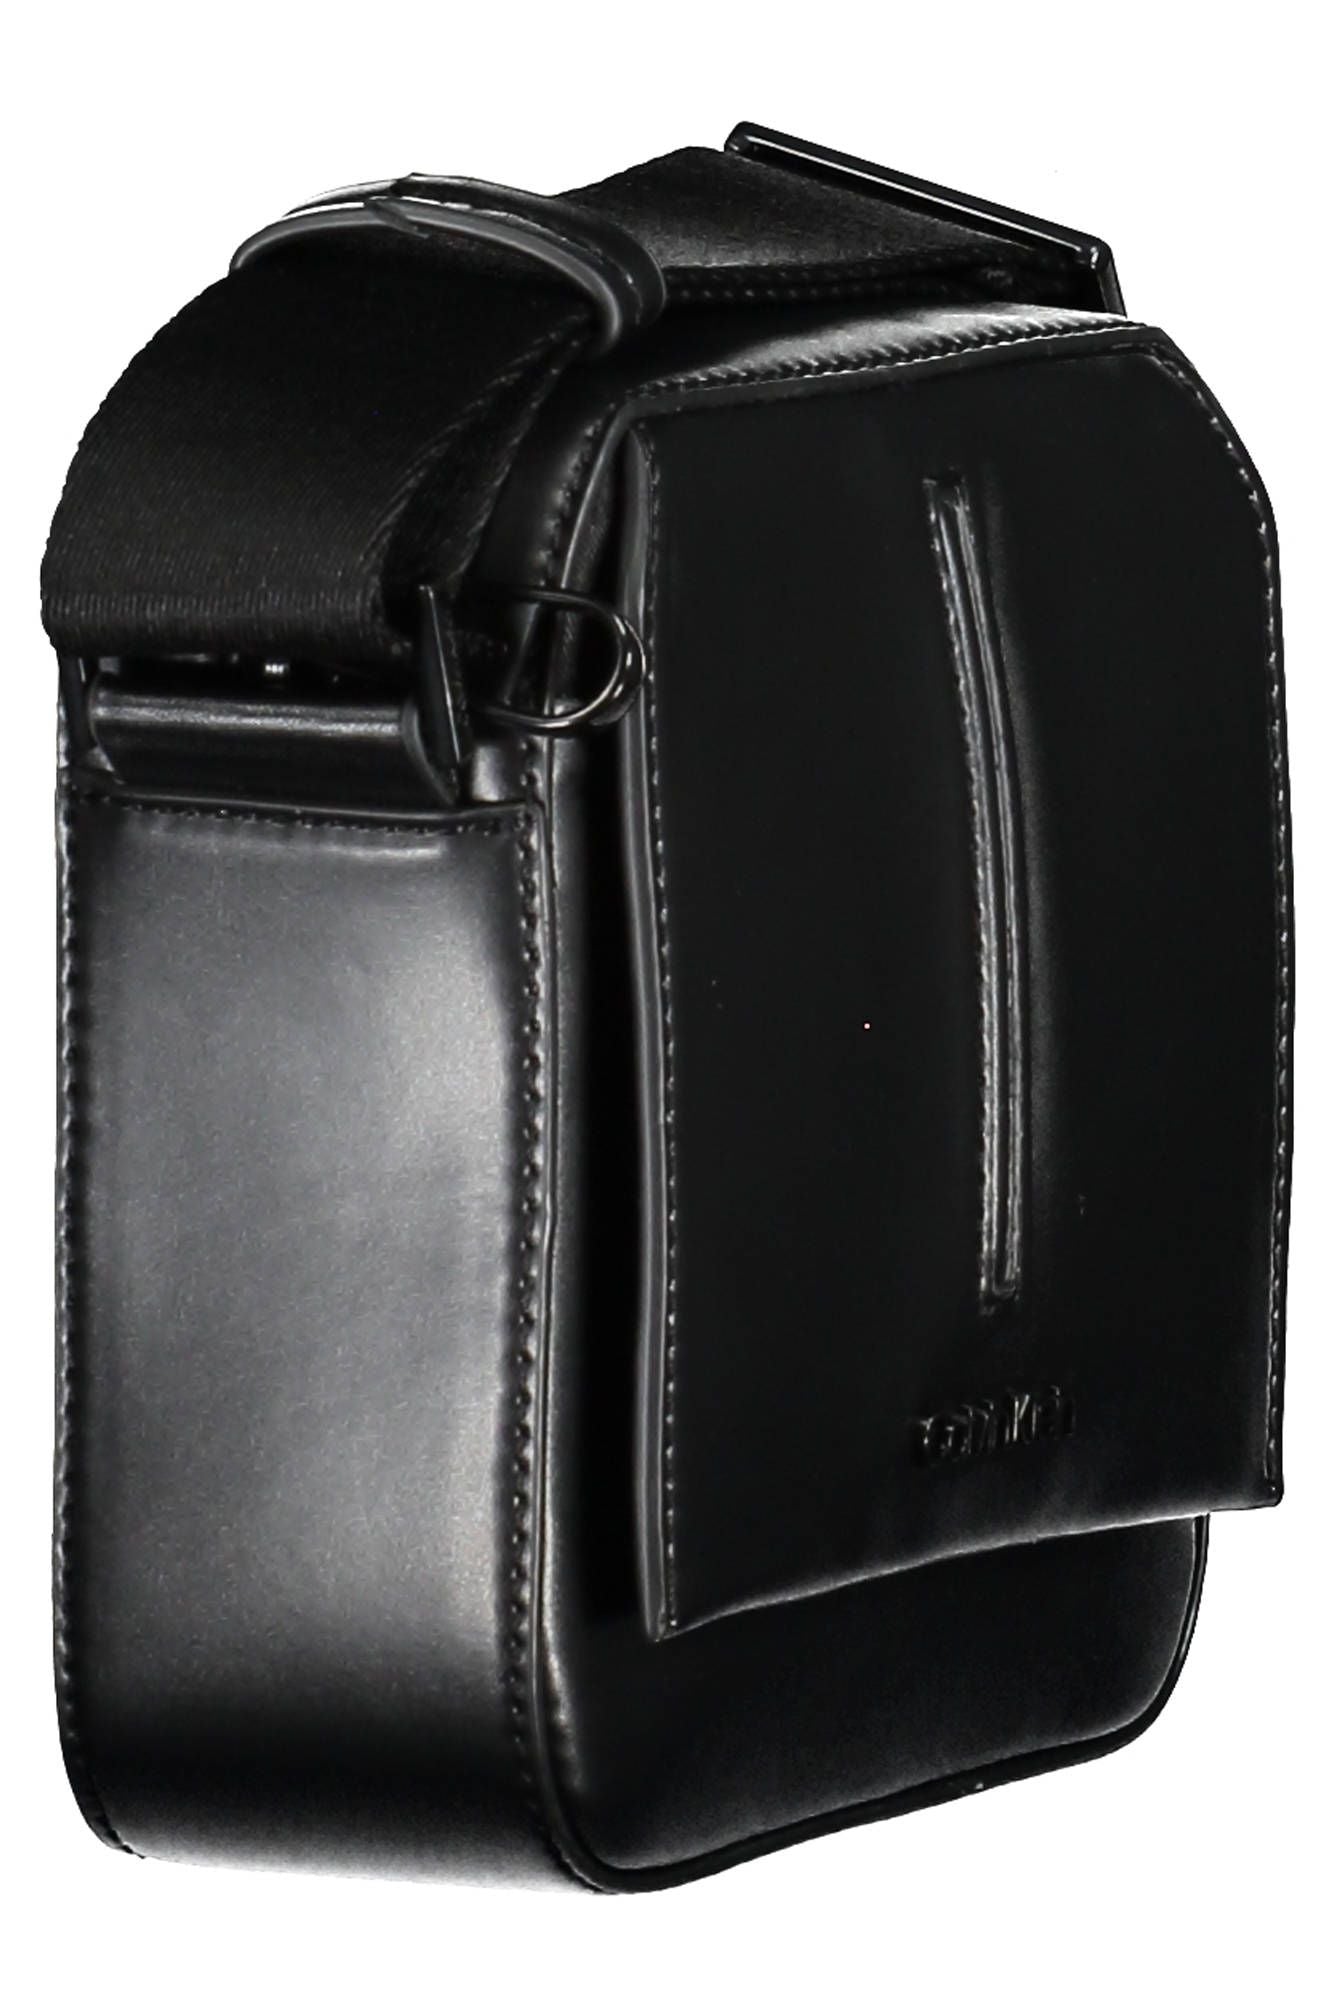 Sleek Black Shoulder Bag With Contrasting Accents